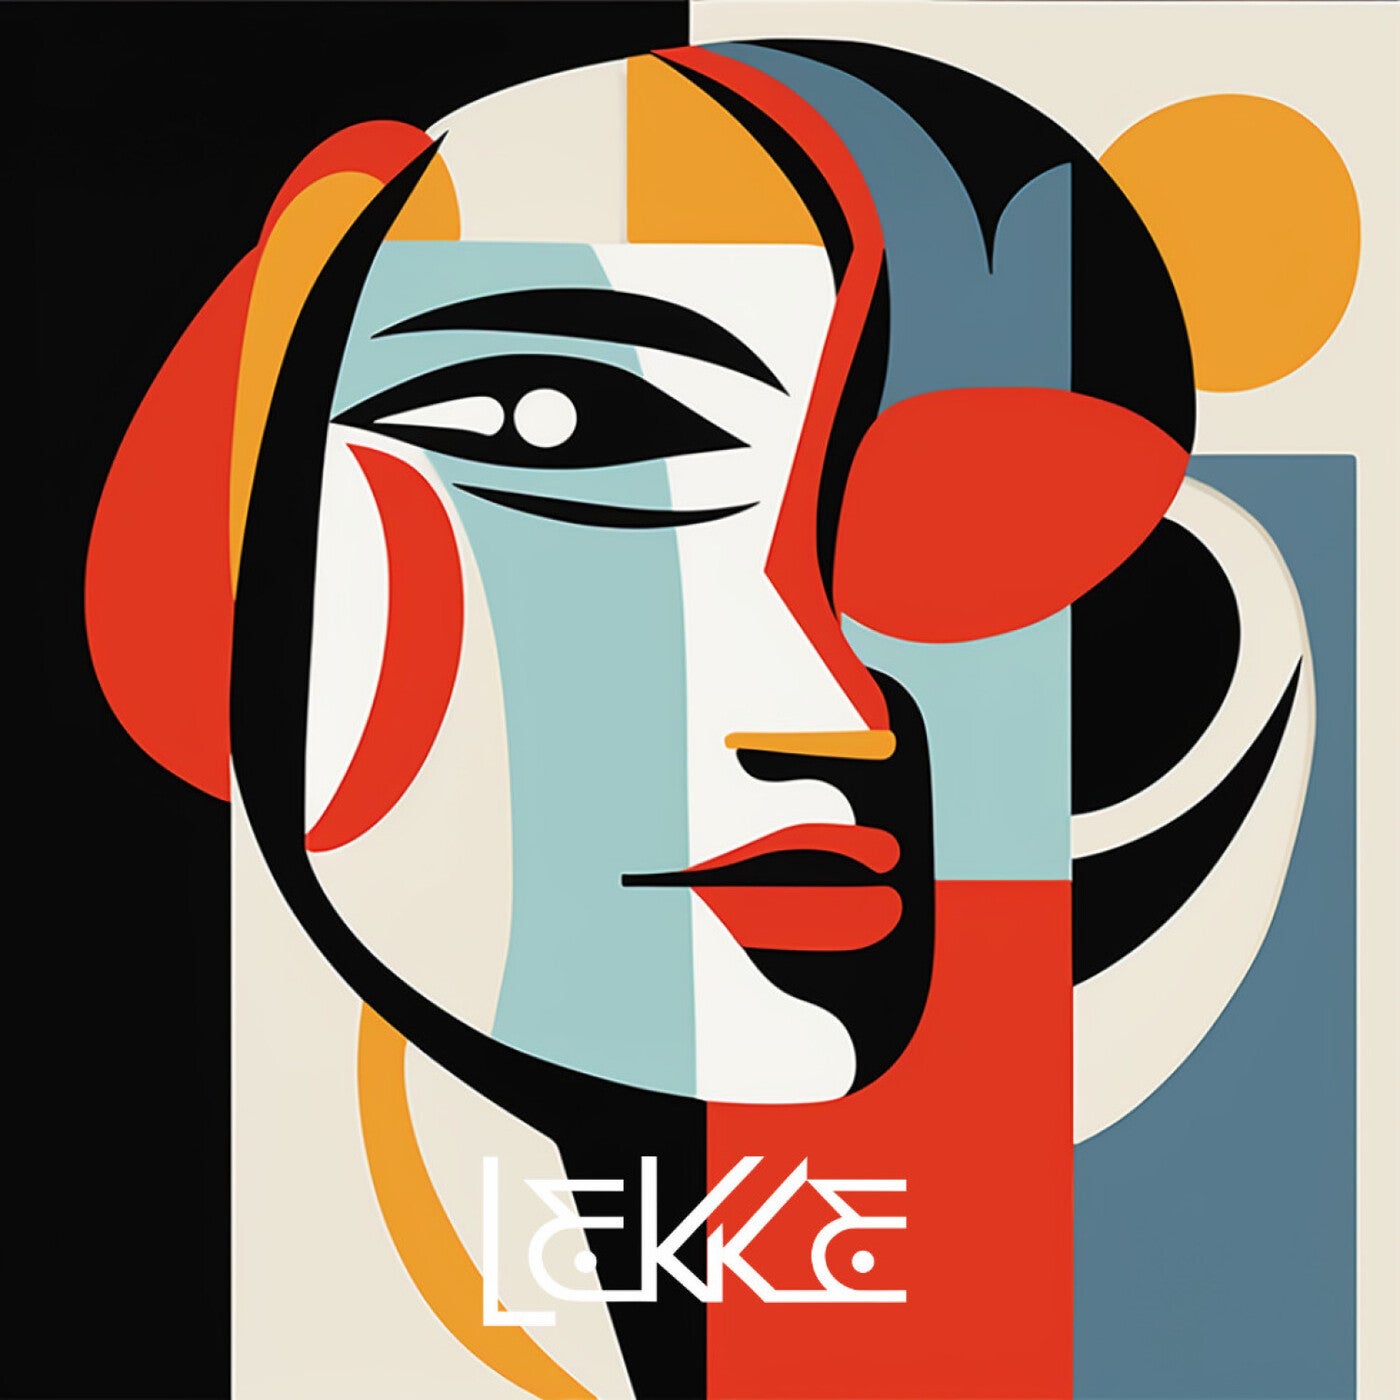 image cover: Berin, Oppaacha - Patron on Lekke LLC